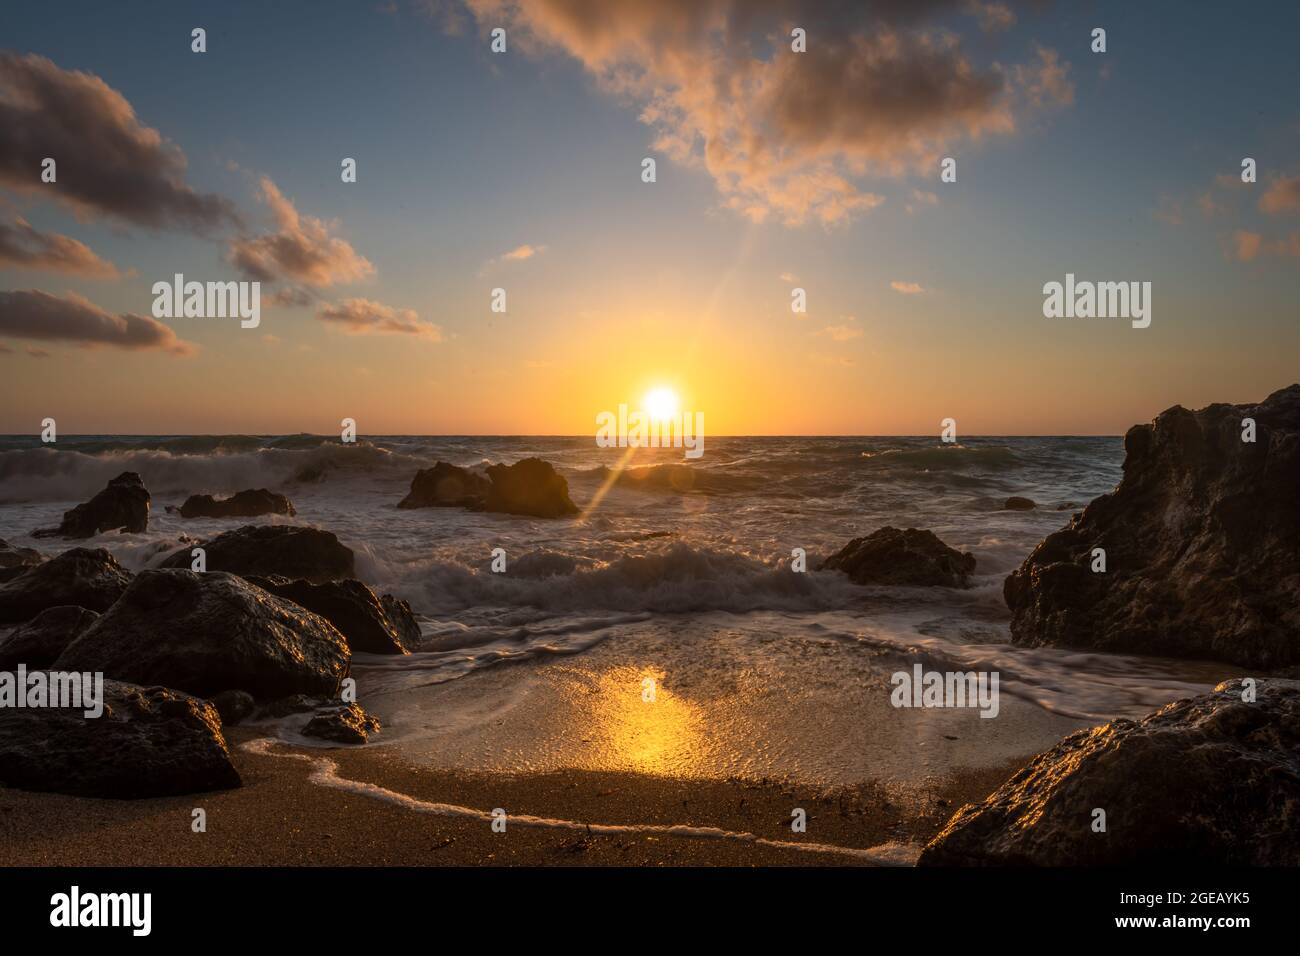 Un bel tramonto dorato con riflessi sulle onde che si lavano sulla spiaggia e il sole che tramonta dietro l'orizzonte. Foto Stock